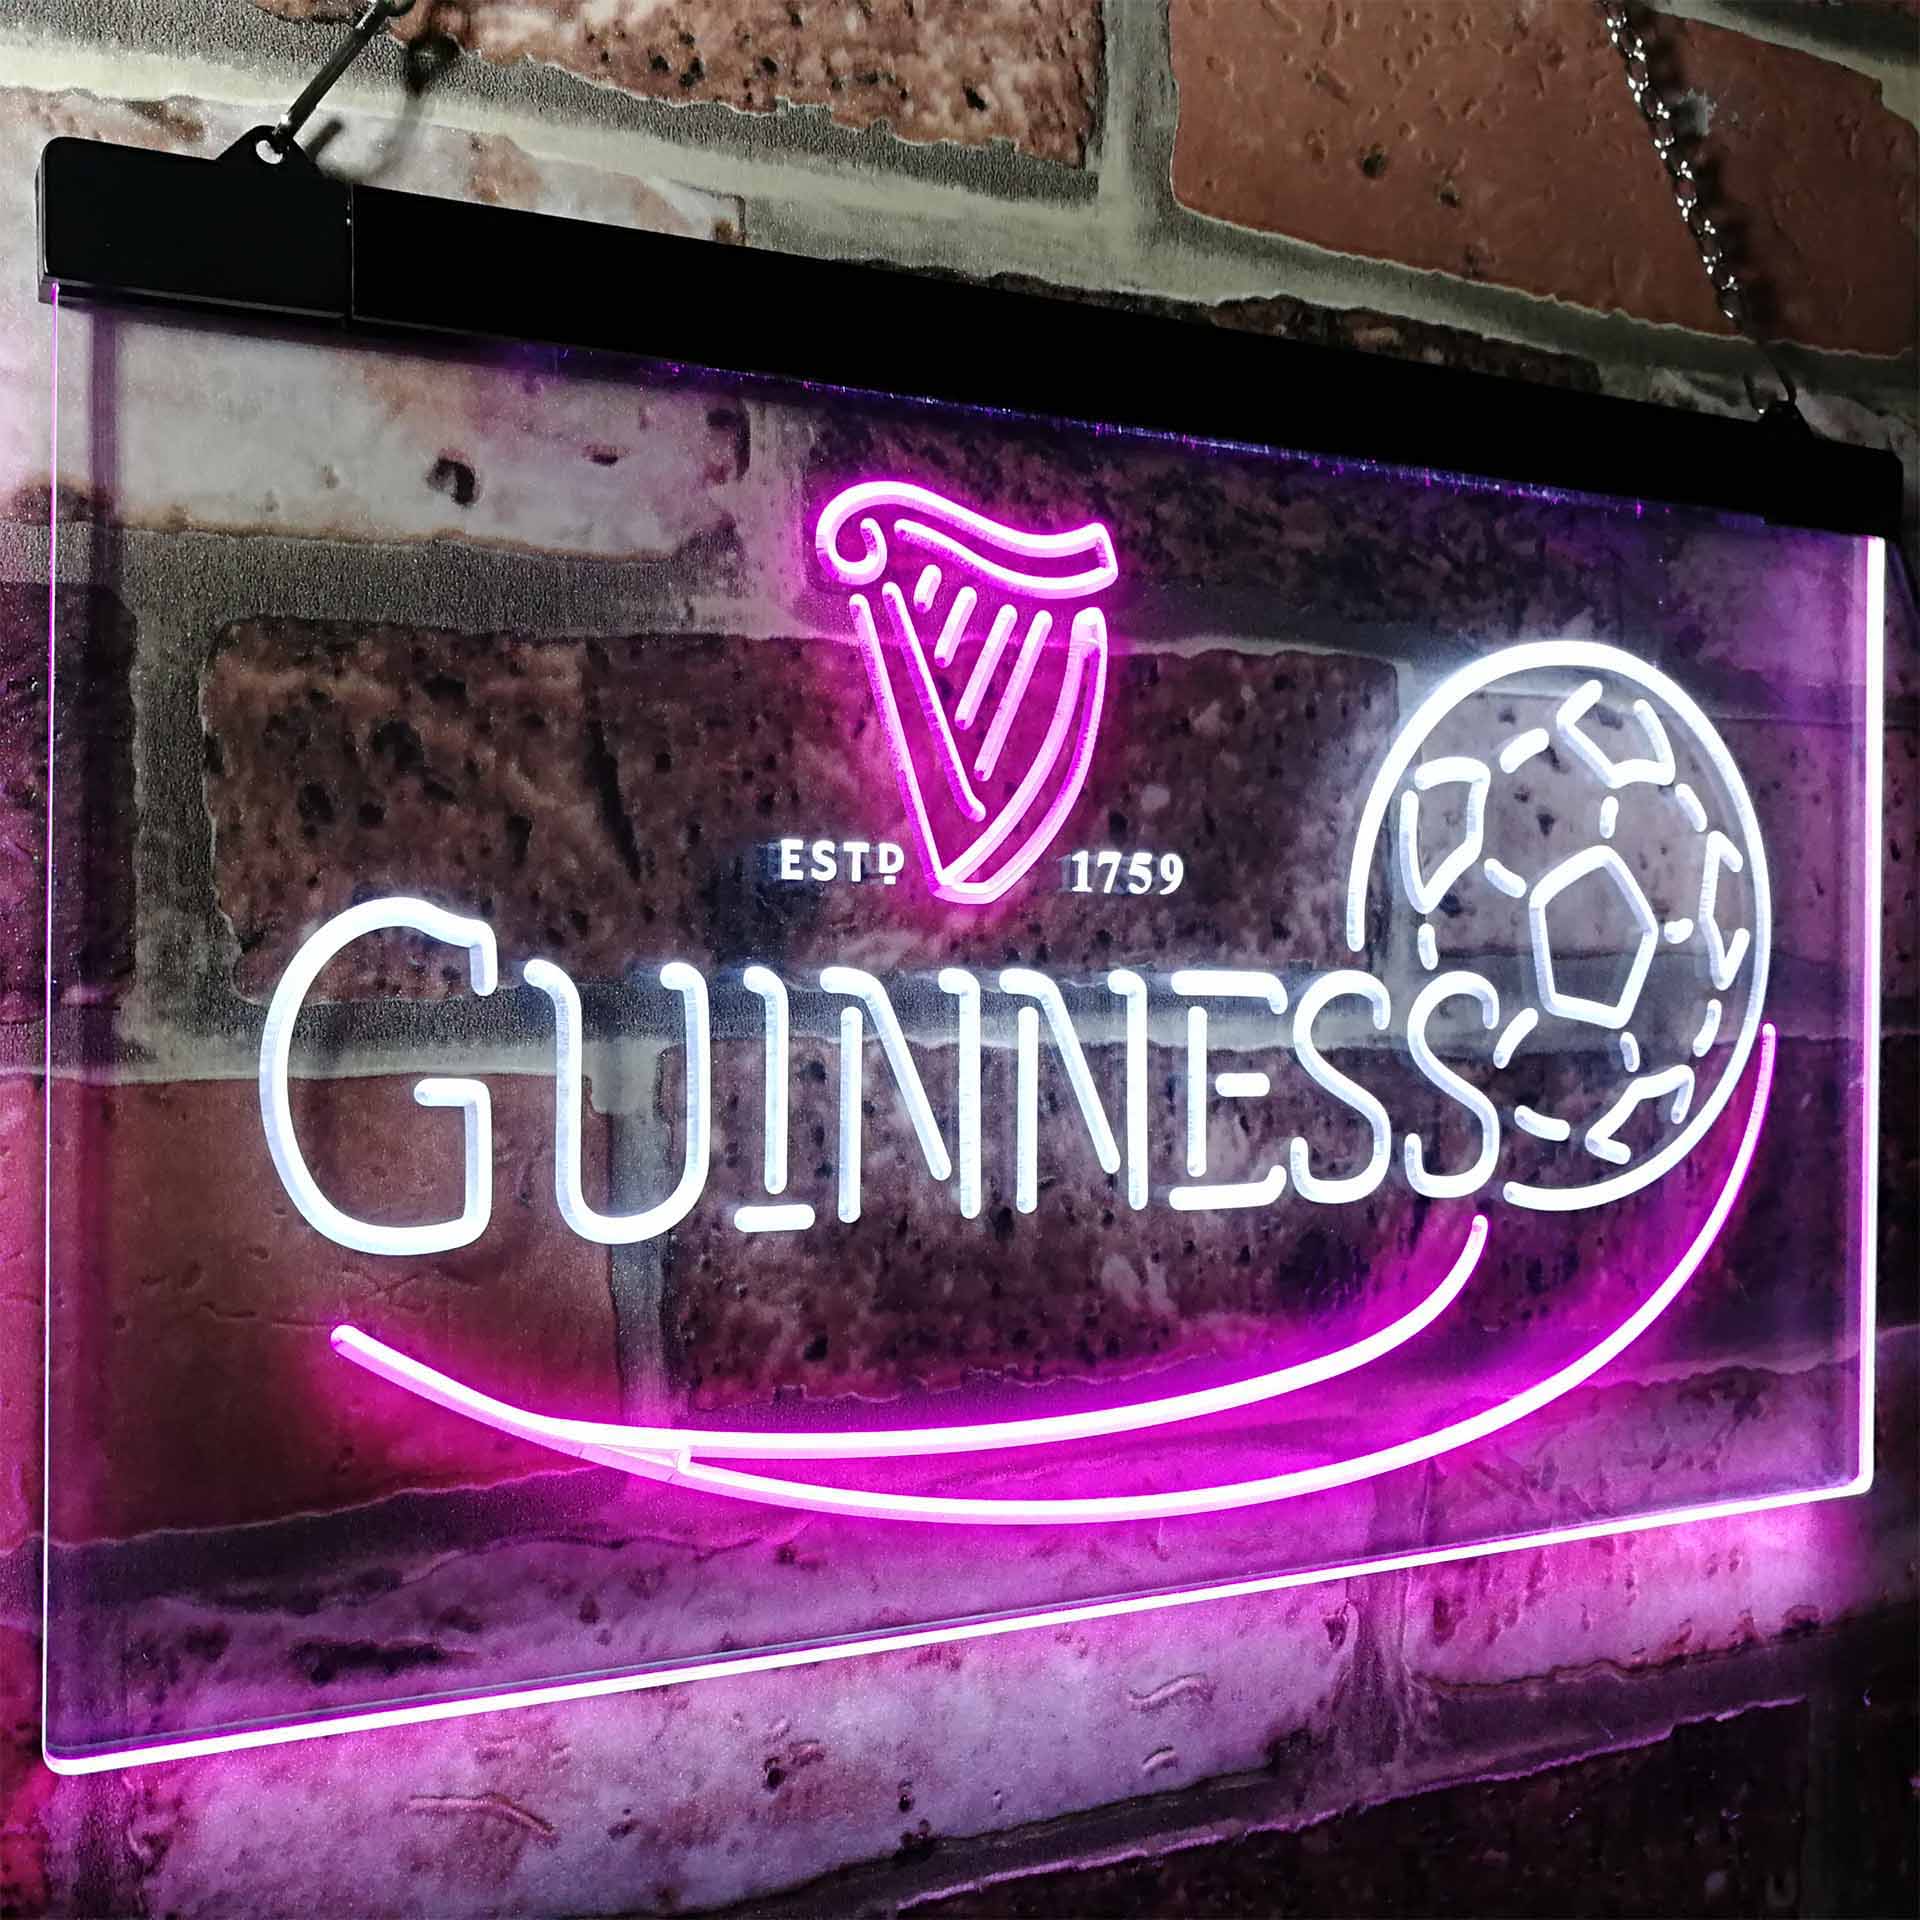 Guinness Soccer Football Beer Bar Decor LED Neon Sign